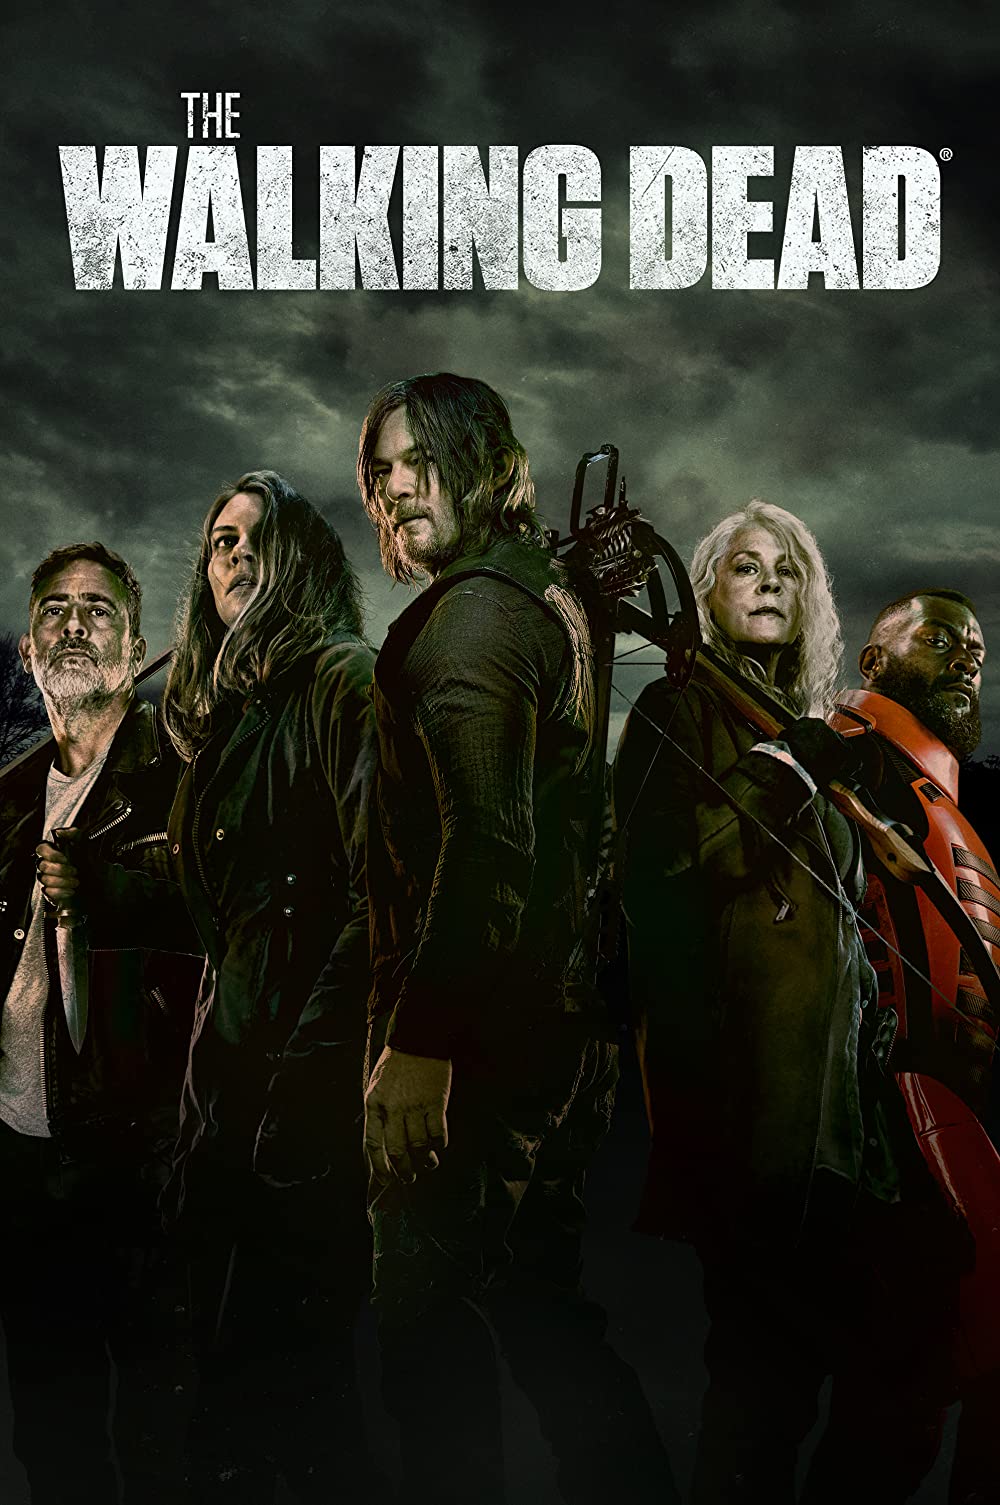 The Walking Dead Seasons 1-11 (2010-2022), on AMC